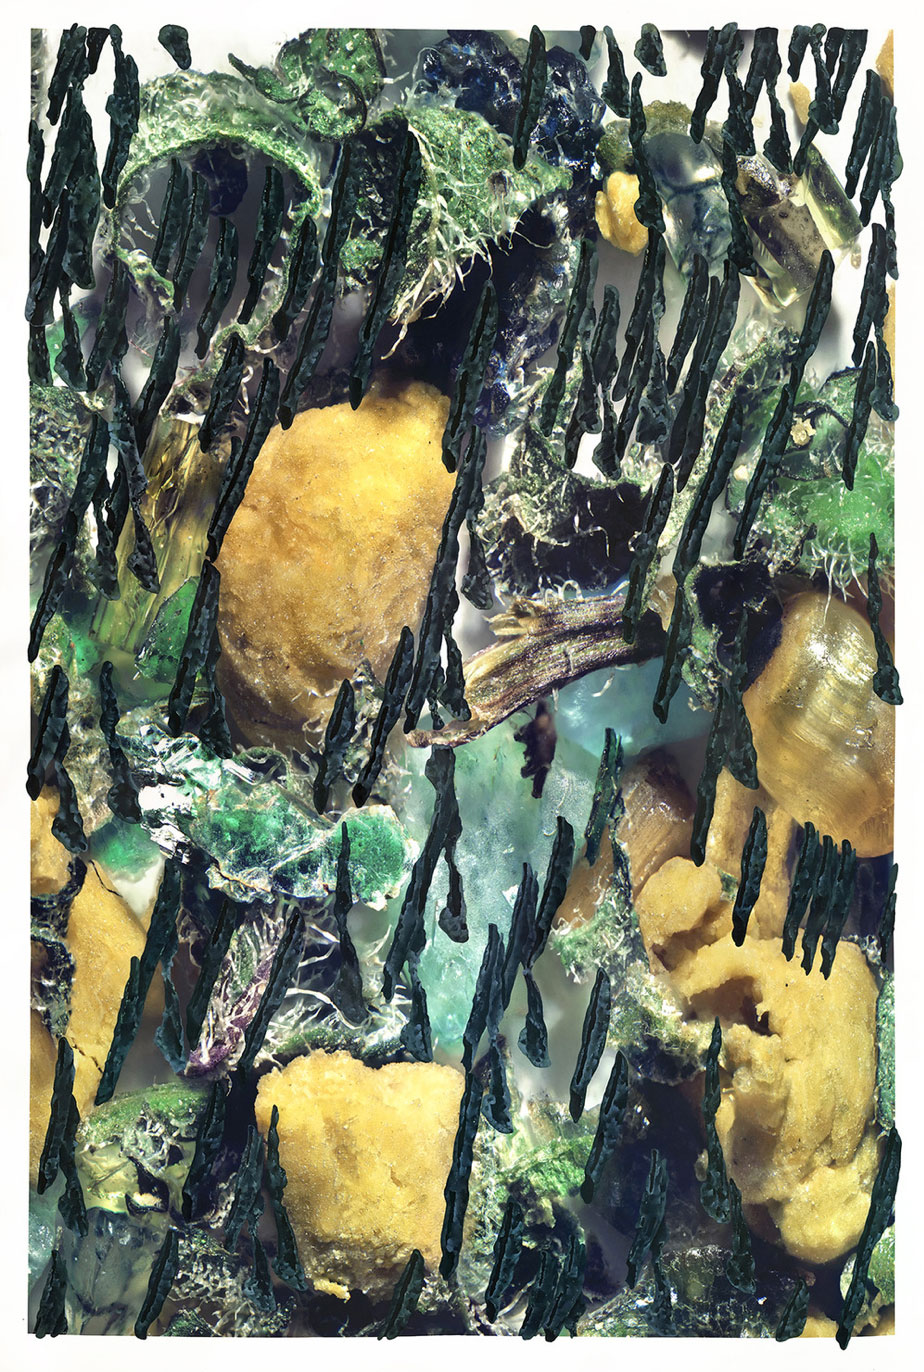 Chiral (0) Acrylique, aquarelle, pigments et encre sur papier, 85 x 60 cm © Ran Zhang